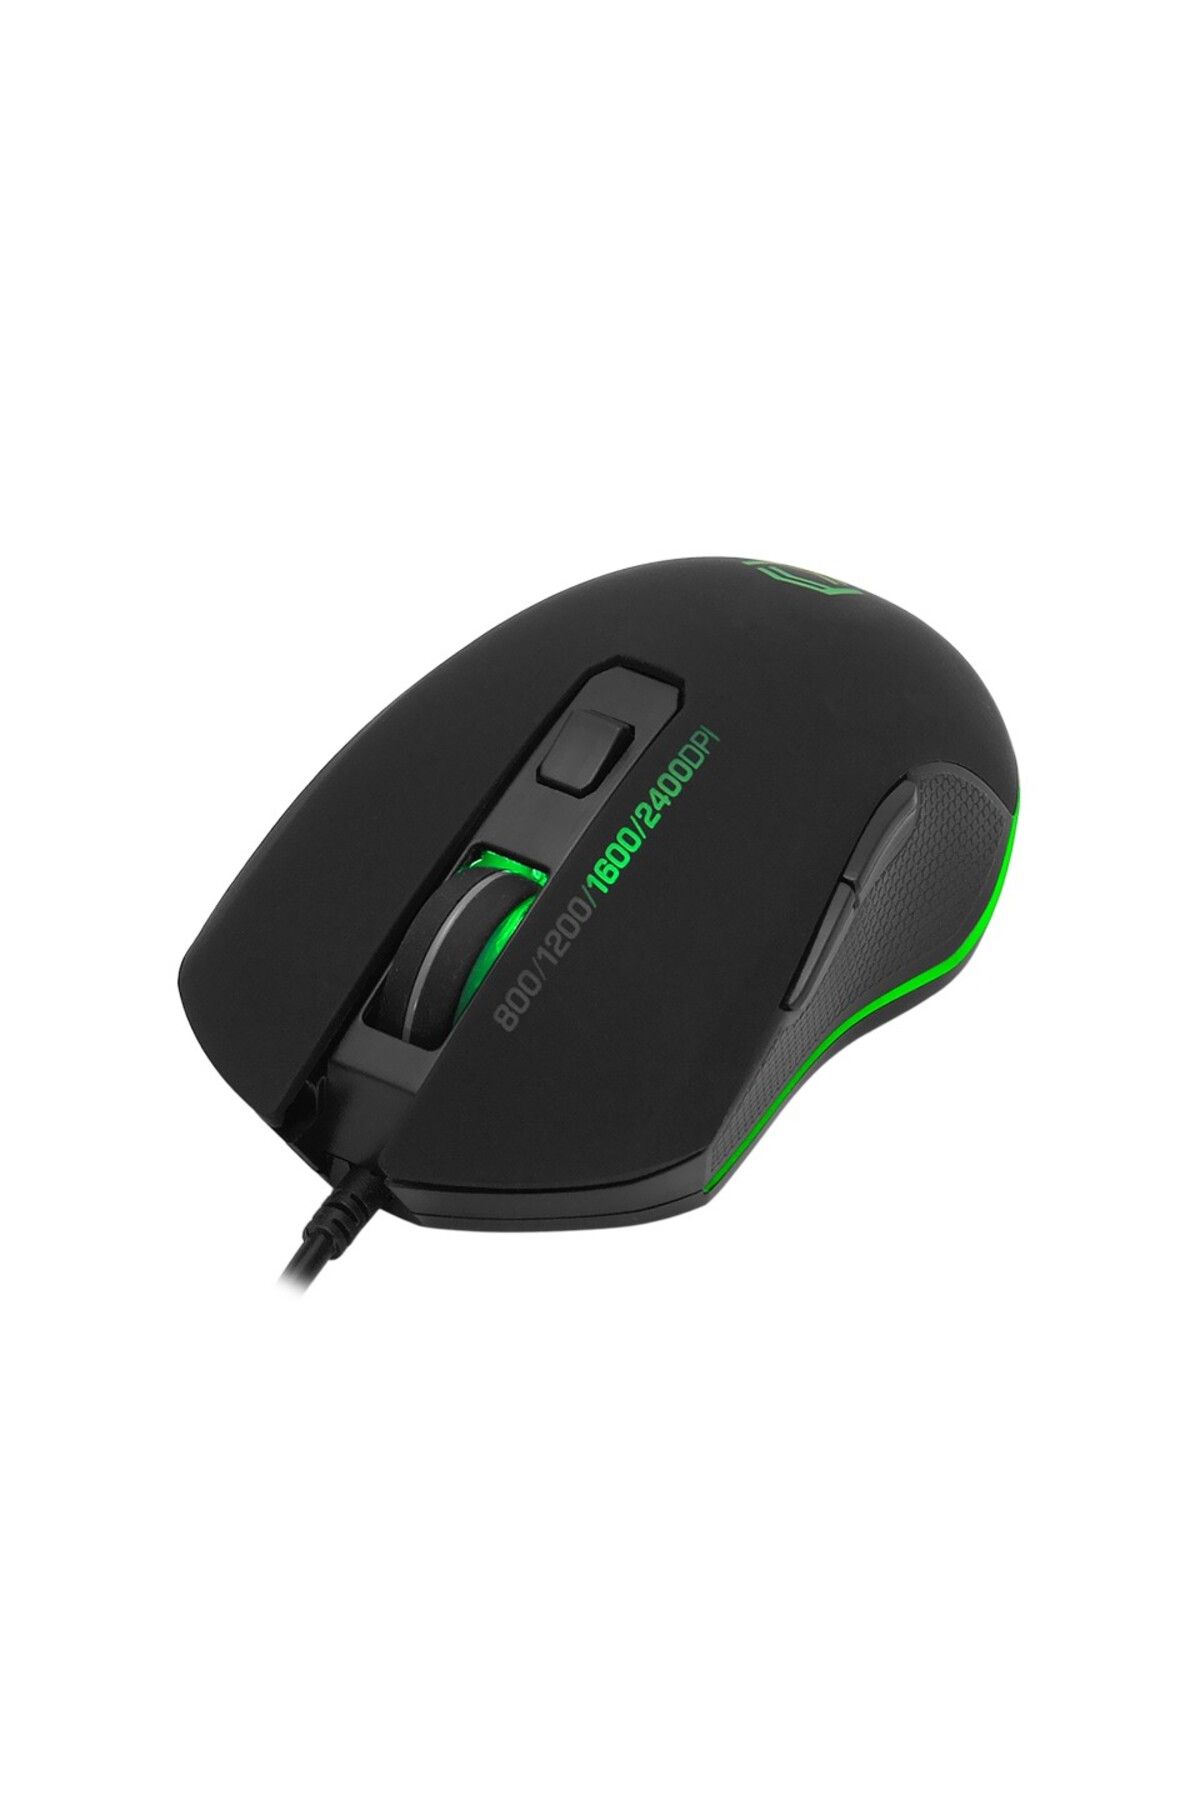 OEM Frisby Programlanabilir Rgb 10.000 Dpi Oyuncu Kablolu Mouse